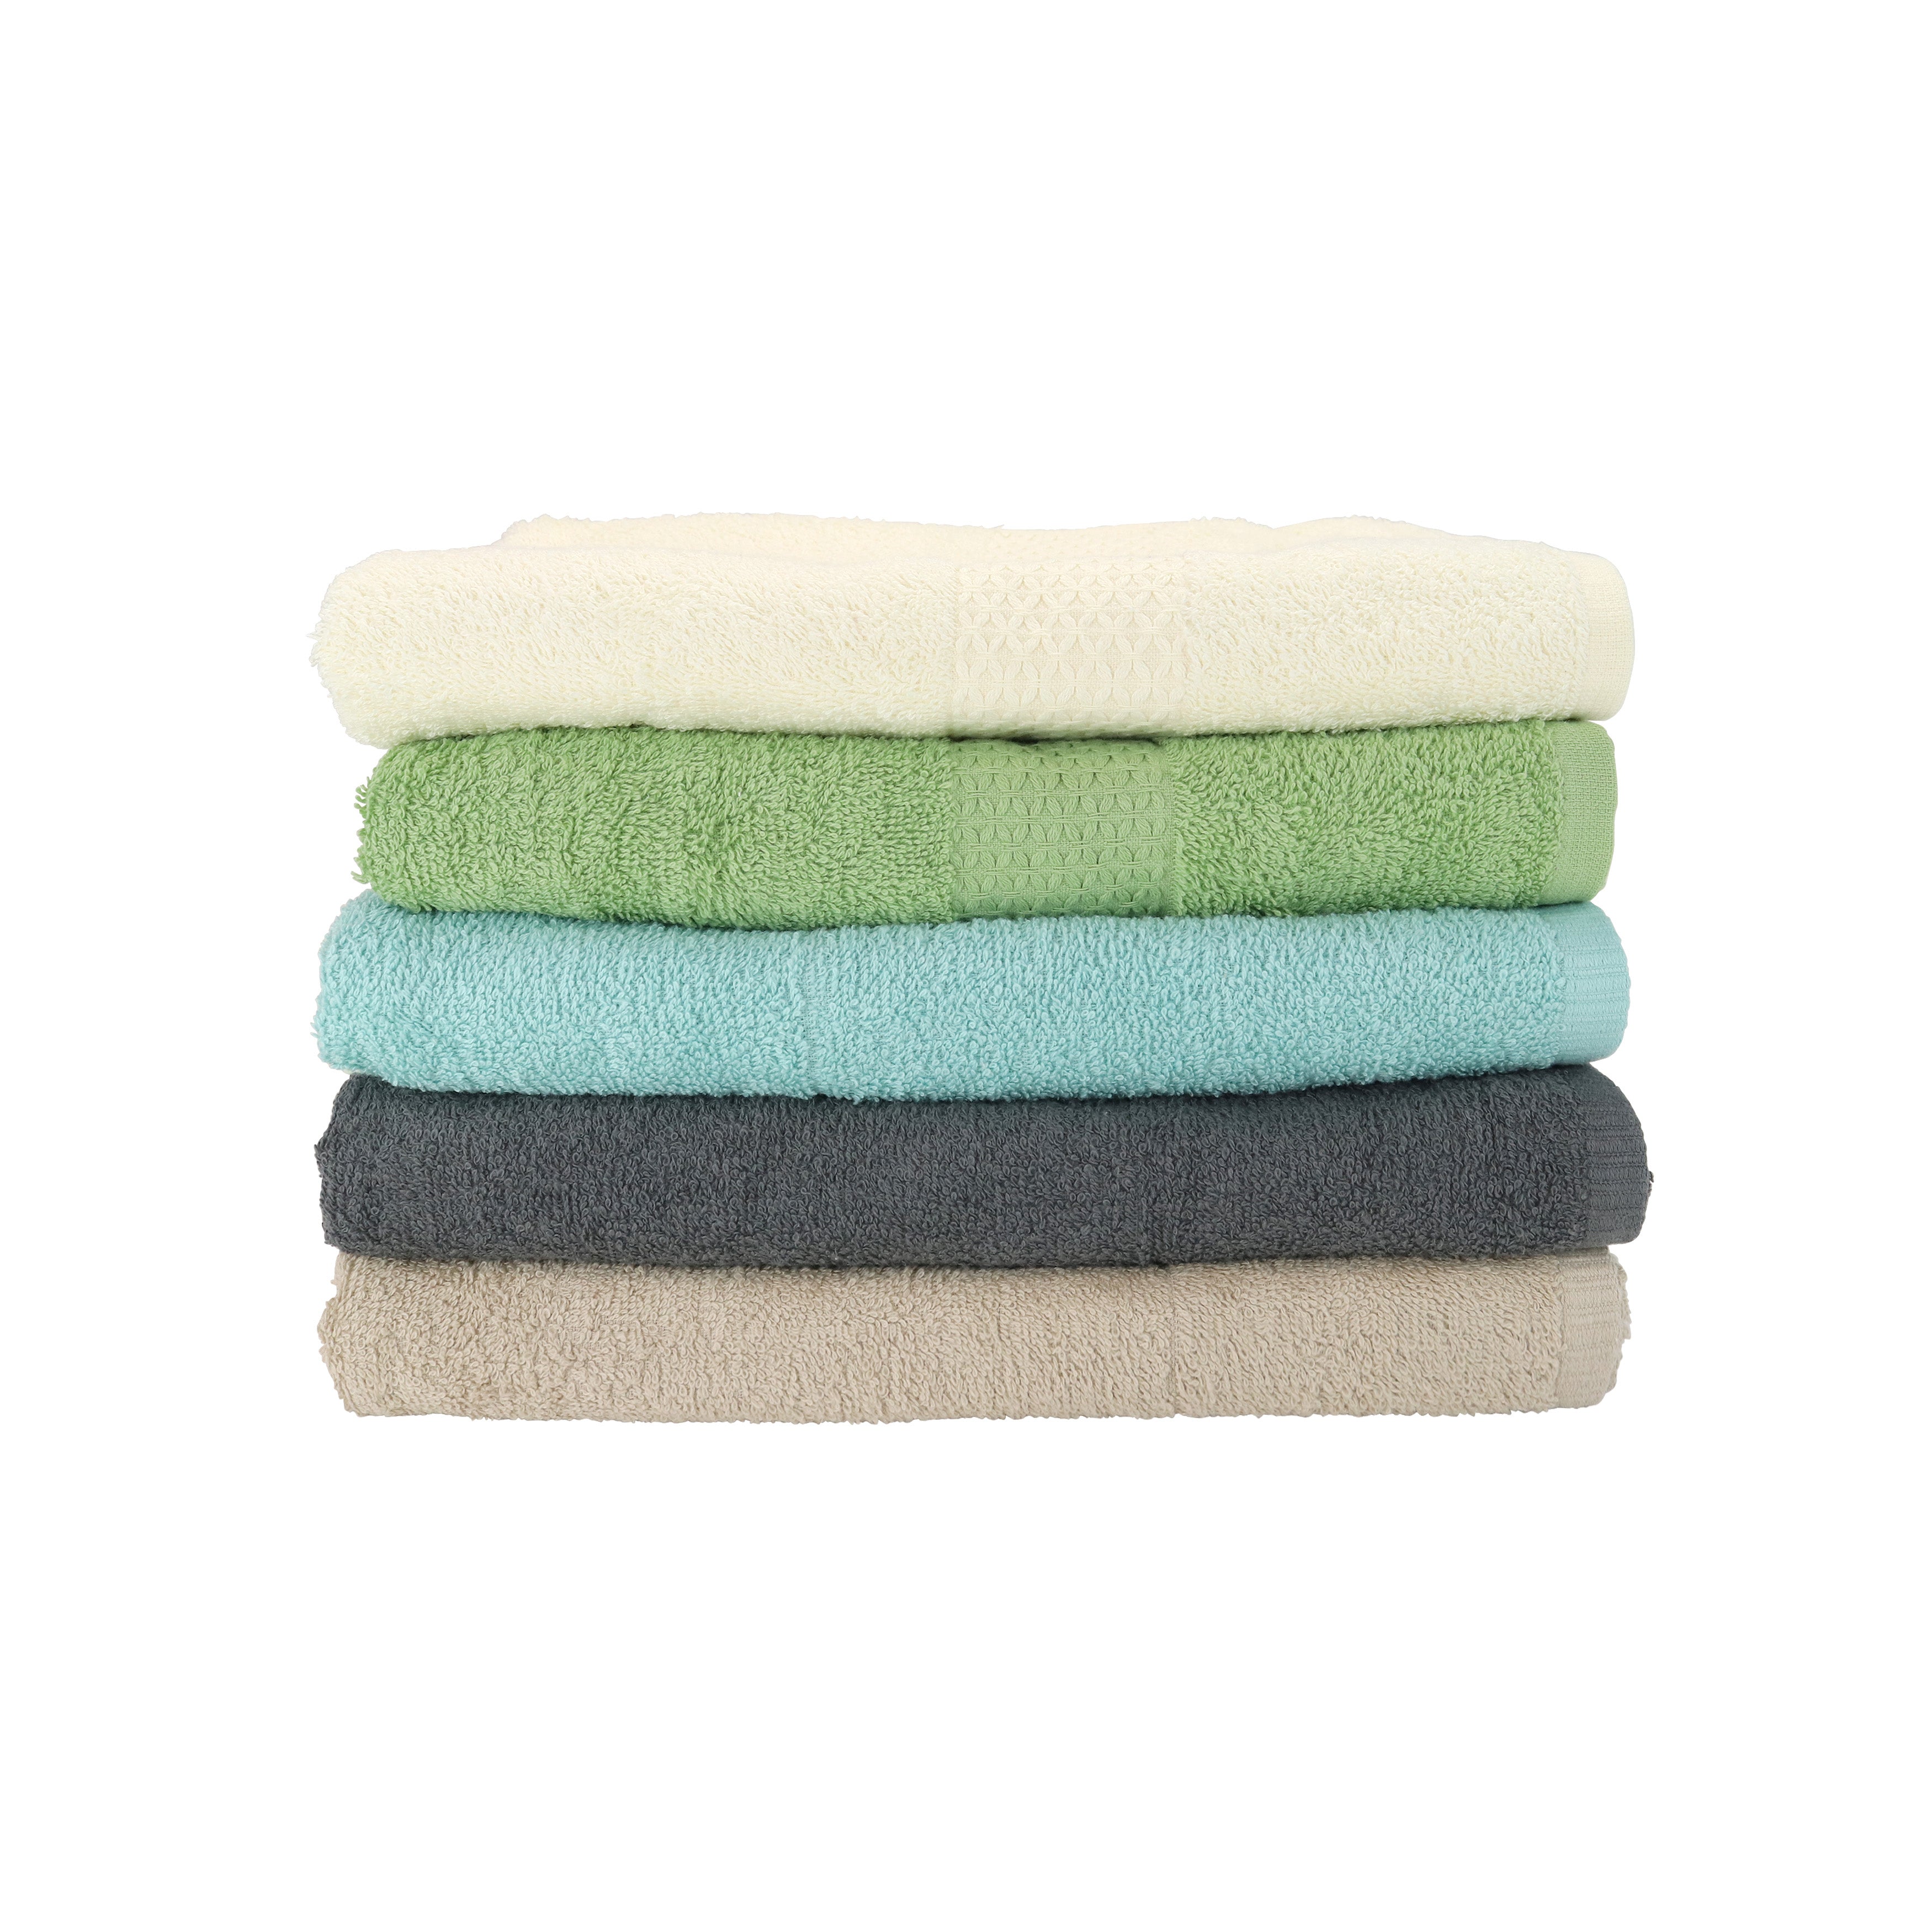 Pleasant Home Bath Towel Set – 4 Pack – 100% Cotton, 500 GSM, 32 x